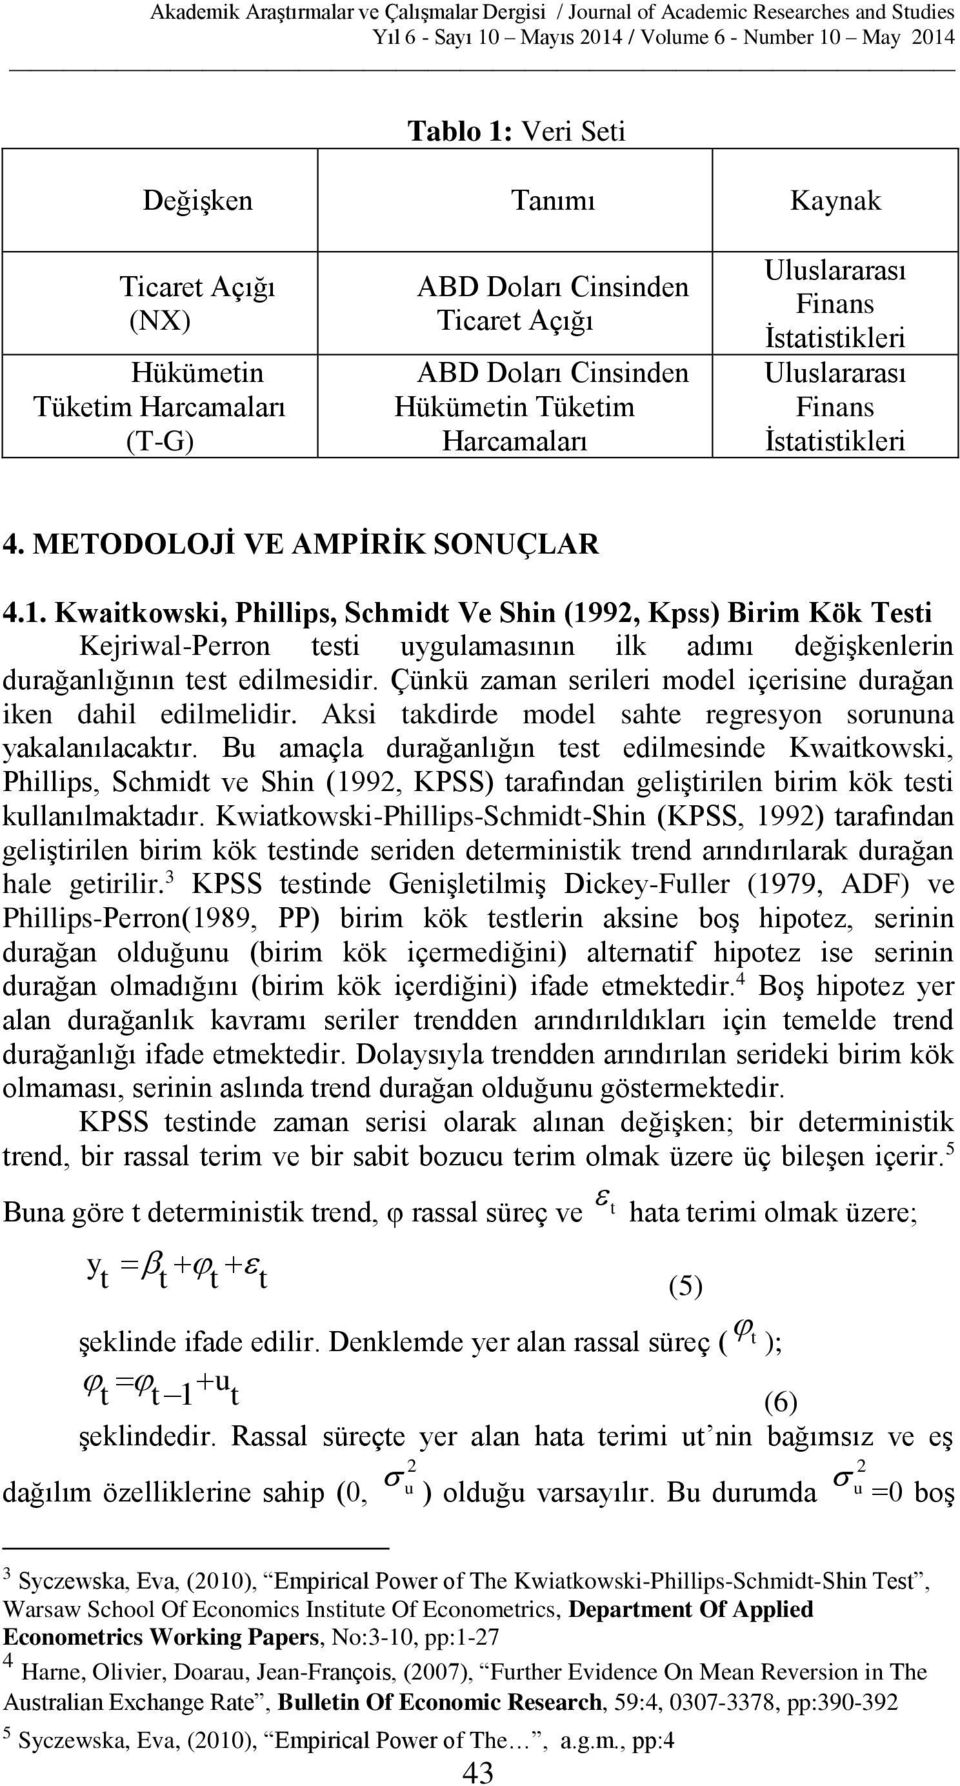 . Kwaikowski, Phillips, Schmid Ve Shin (99, Kpss) Birim Kök esi Kejriwal-Perron esi uygulamasının ilk adımı değişkenlerin durağanlığının es edilmesidir.